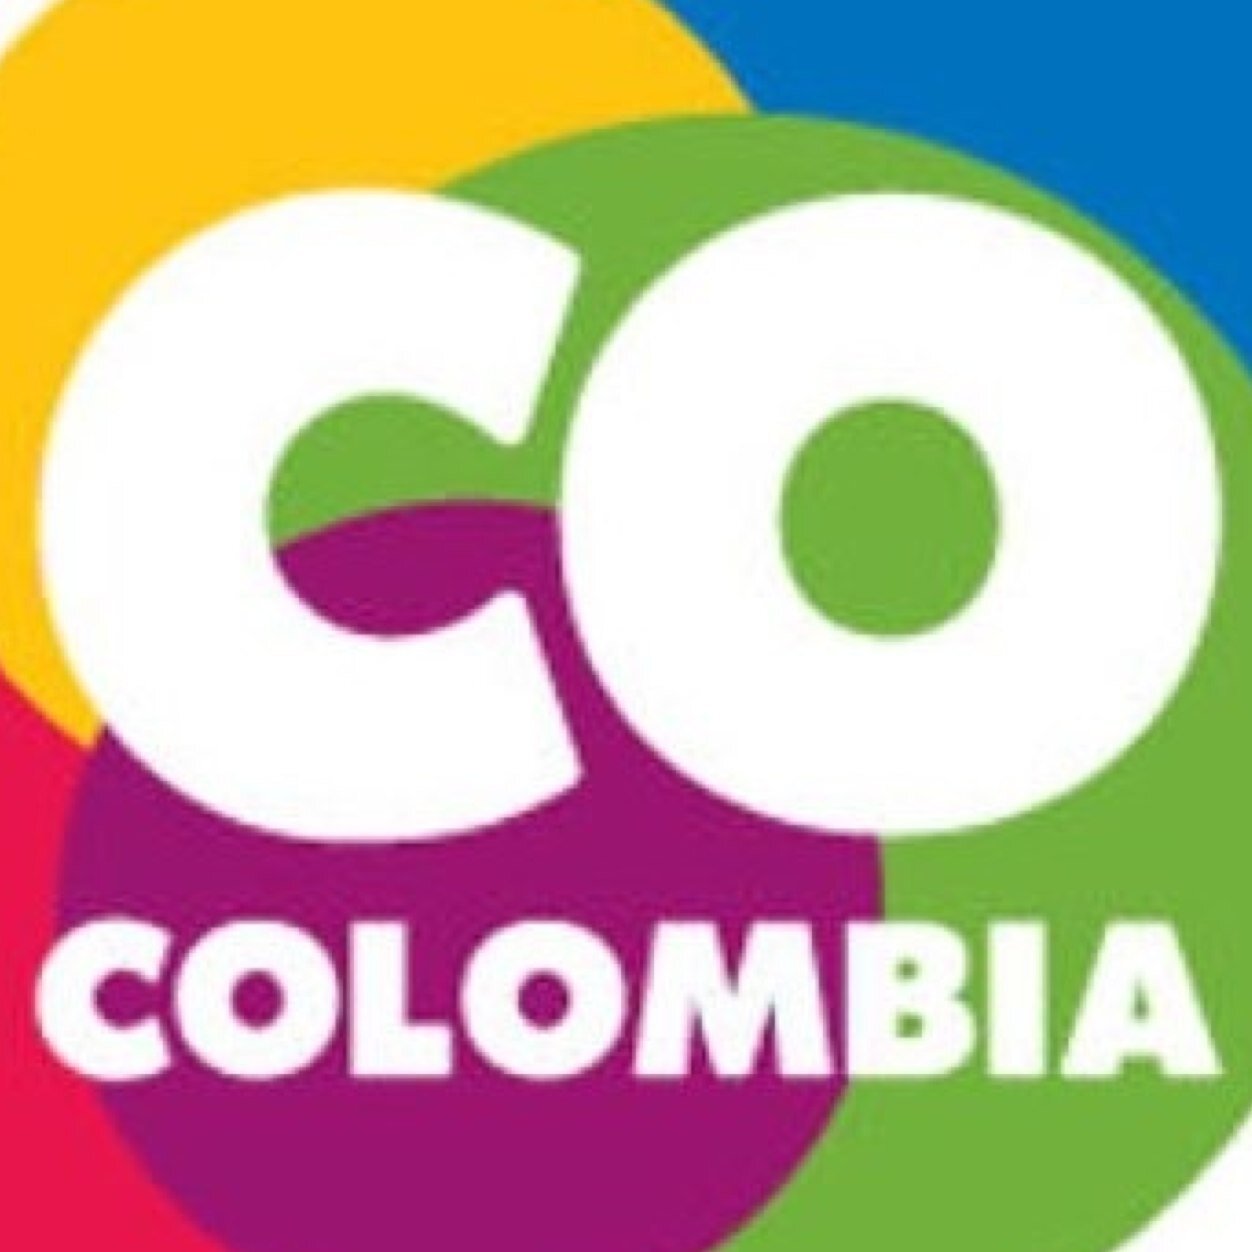 Union de marcas presentes o interesadas en ingresar a Colombia | un producto de @sarinmobiliaria | Servicio al cliente 3123131313